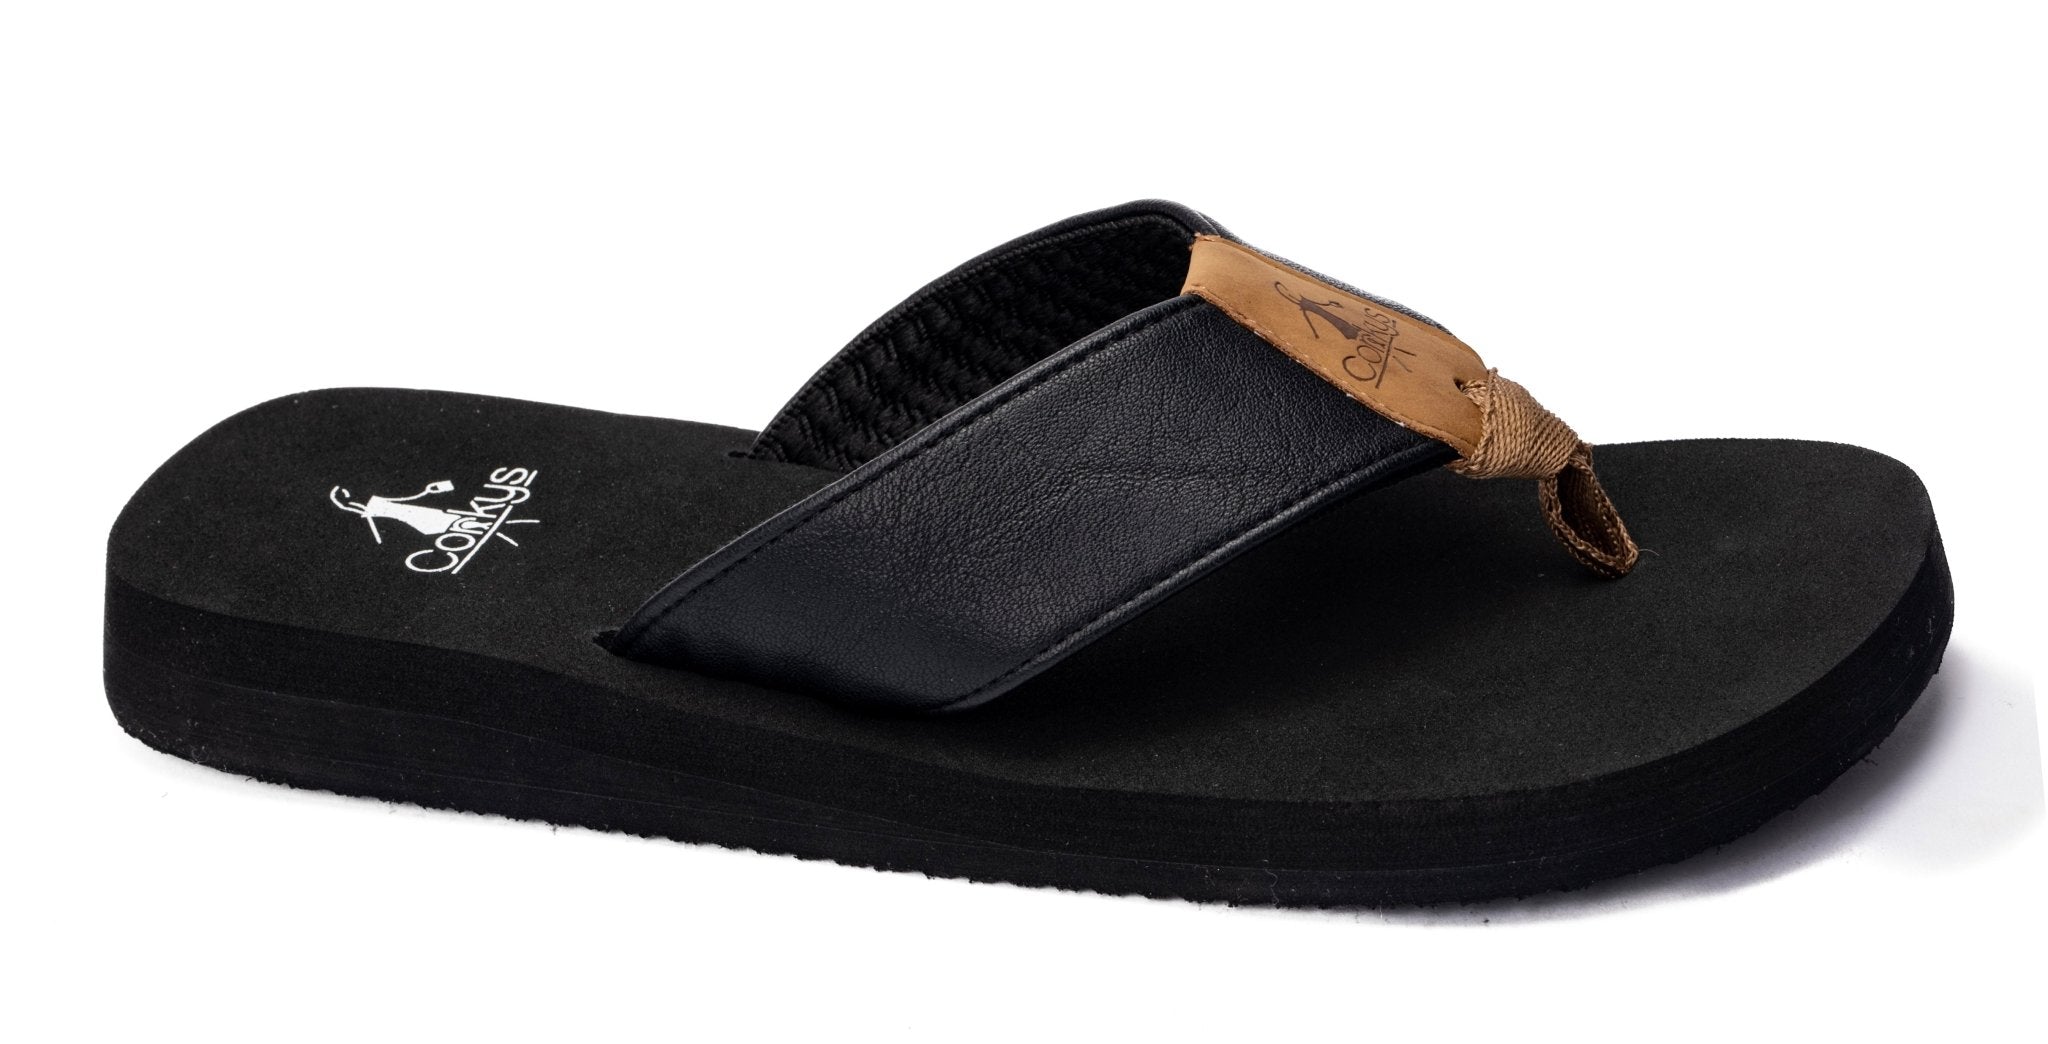 Summer Break Flip Flops - Black on Black - Lavender Hills BeautyCorkys Footwear41-0347-BLCK-T-6